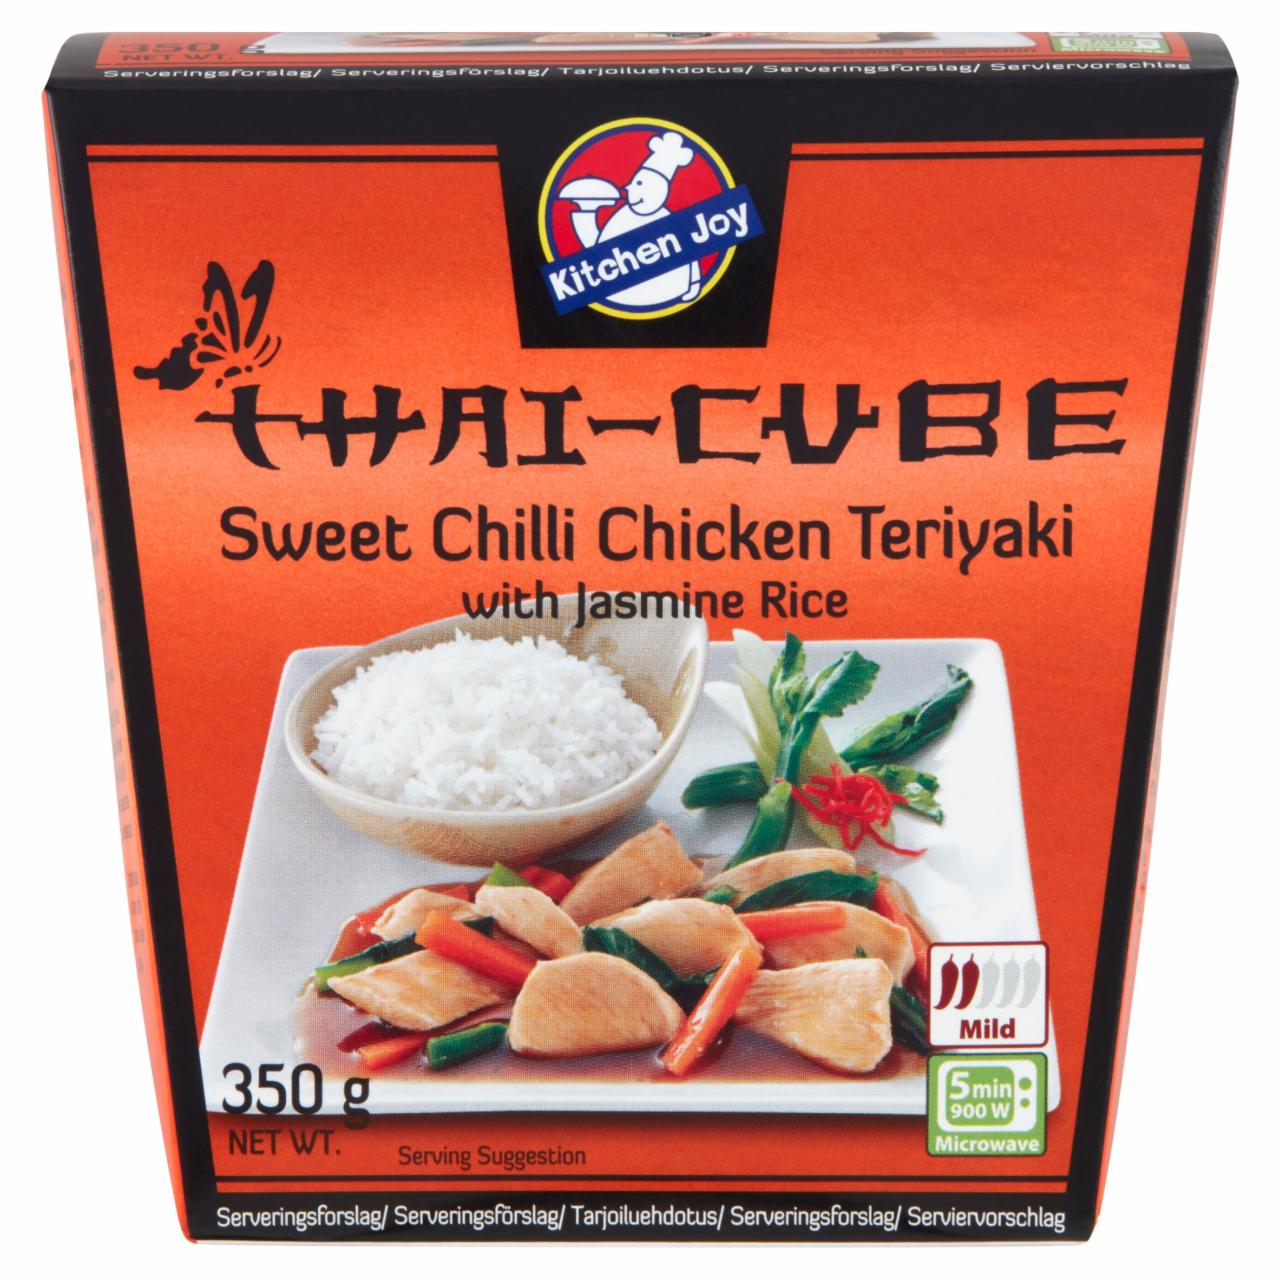 Képek - Kitchen Joy Thai-Cube édes-chilis teriyakis csirke 350 g